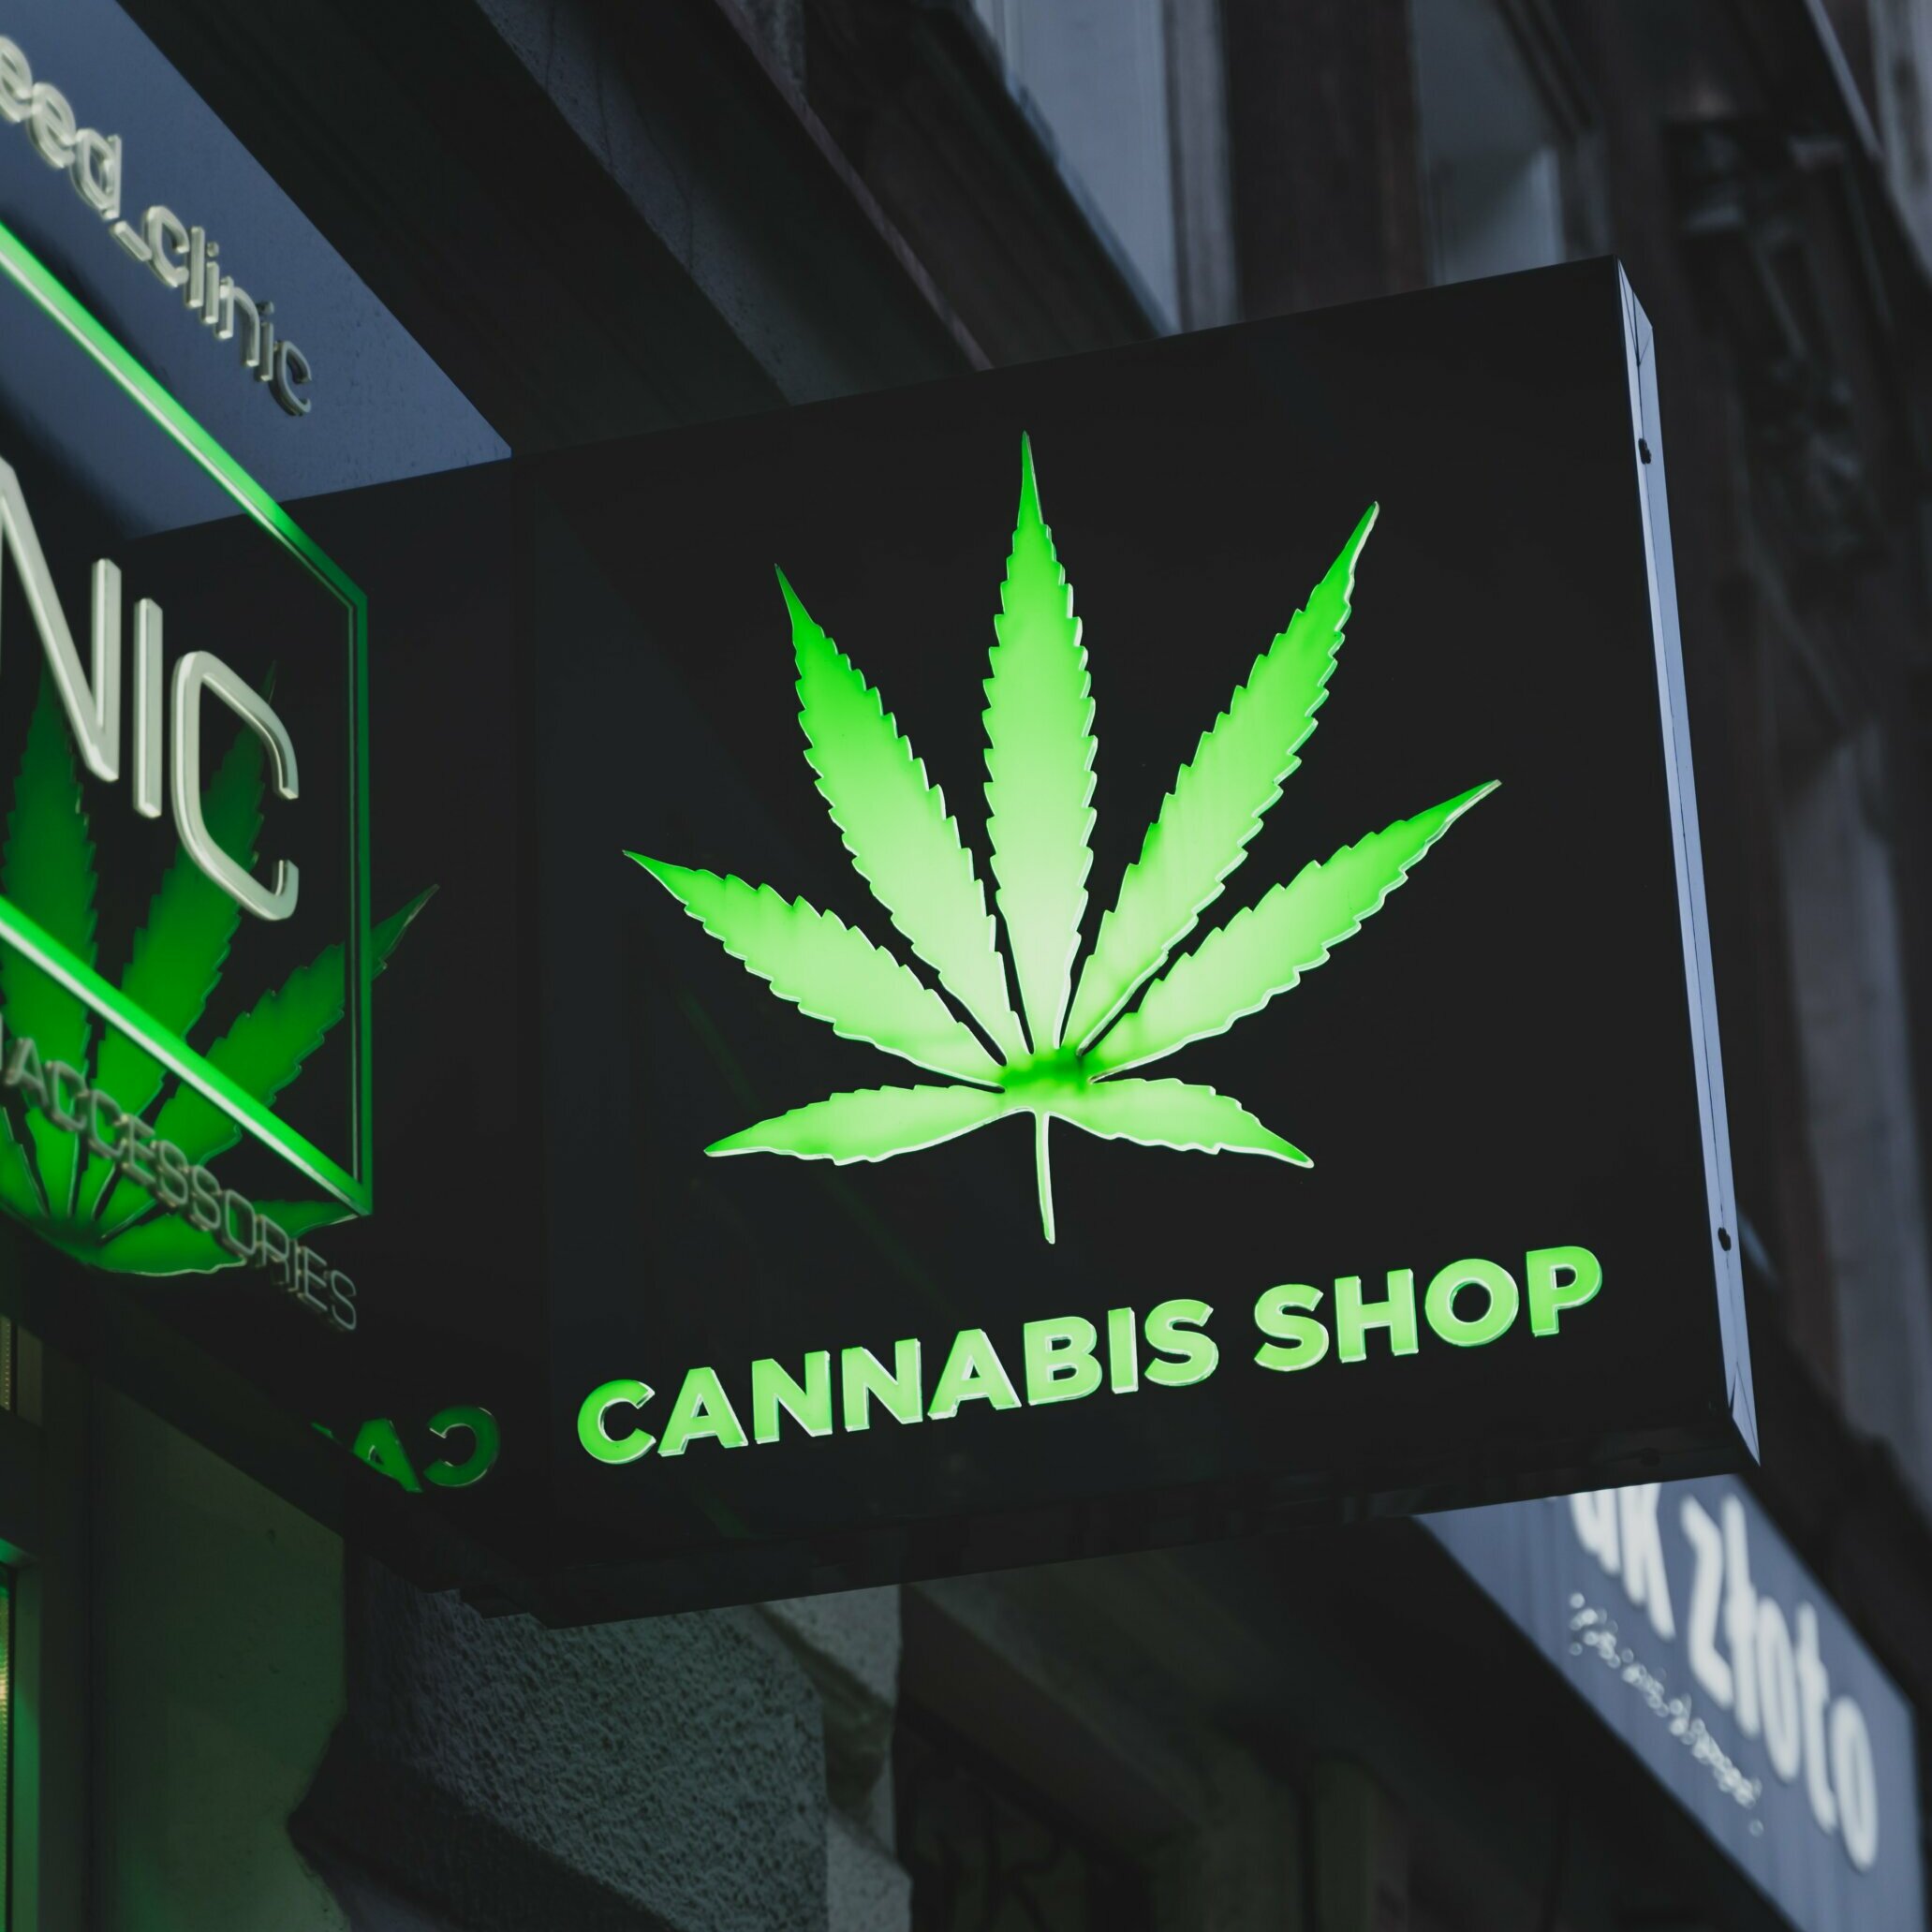 Cannabis shop